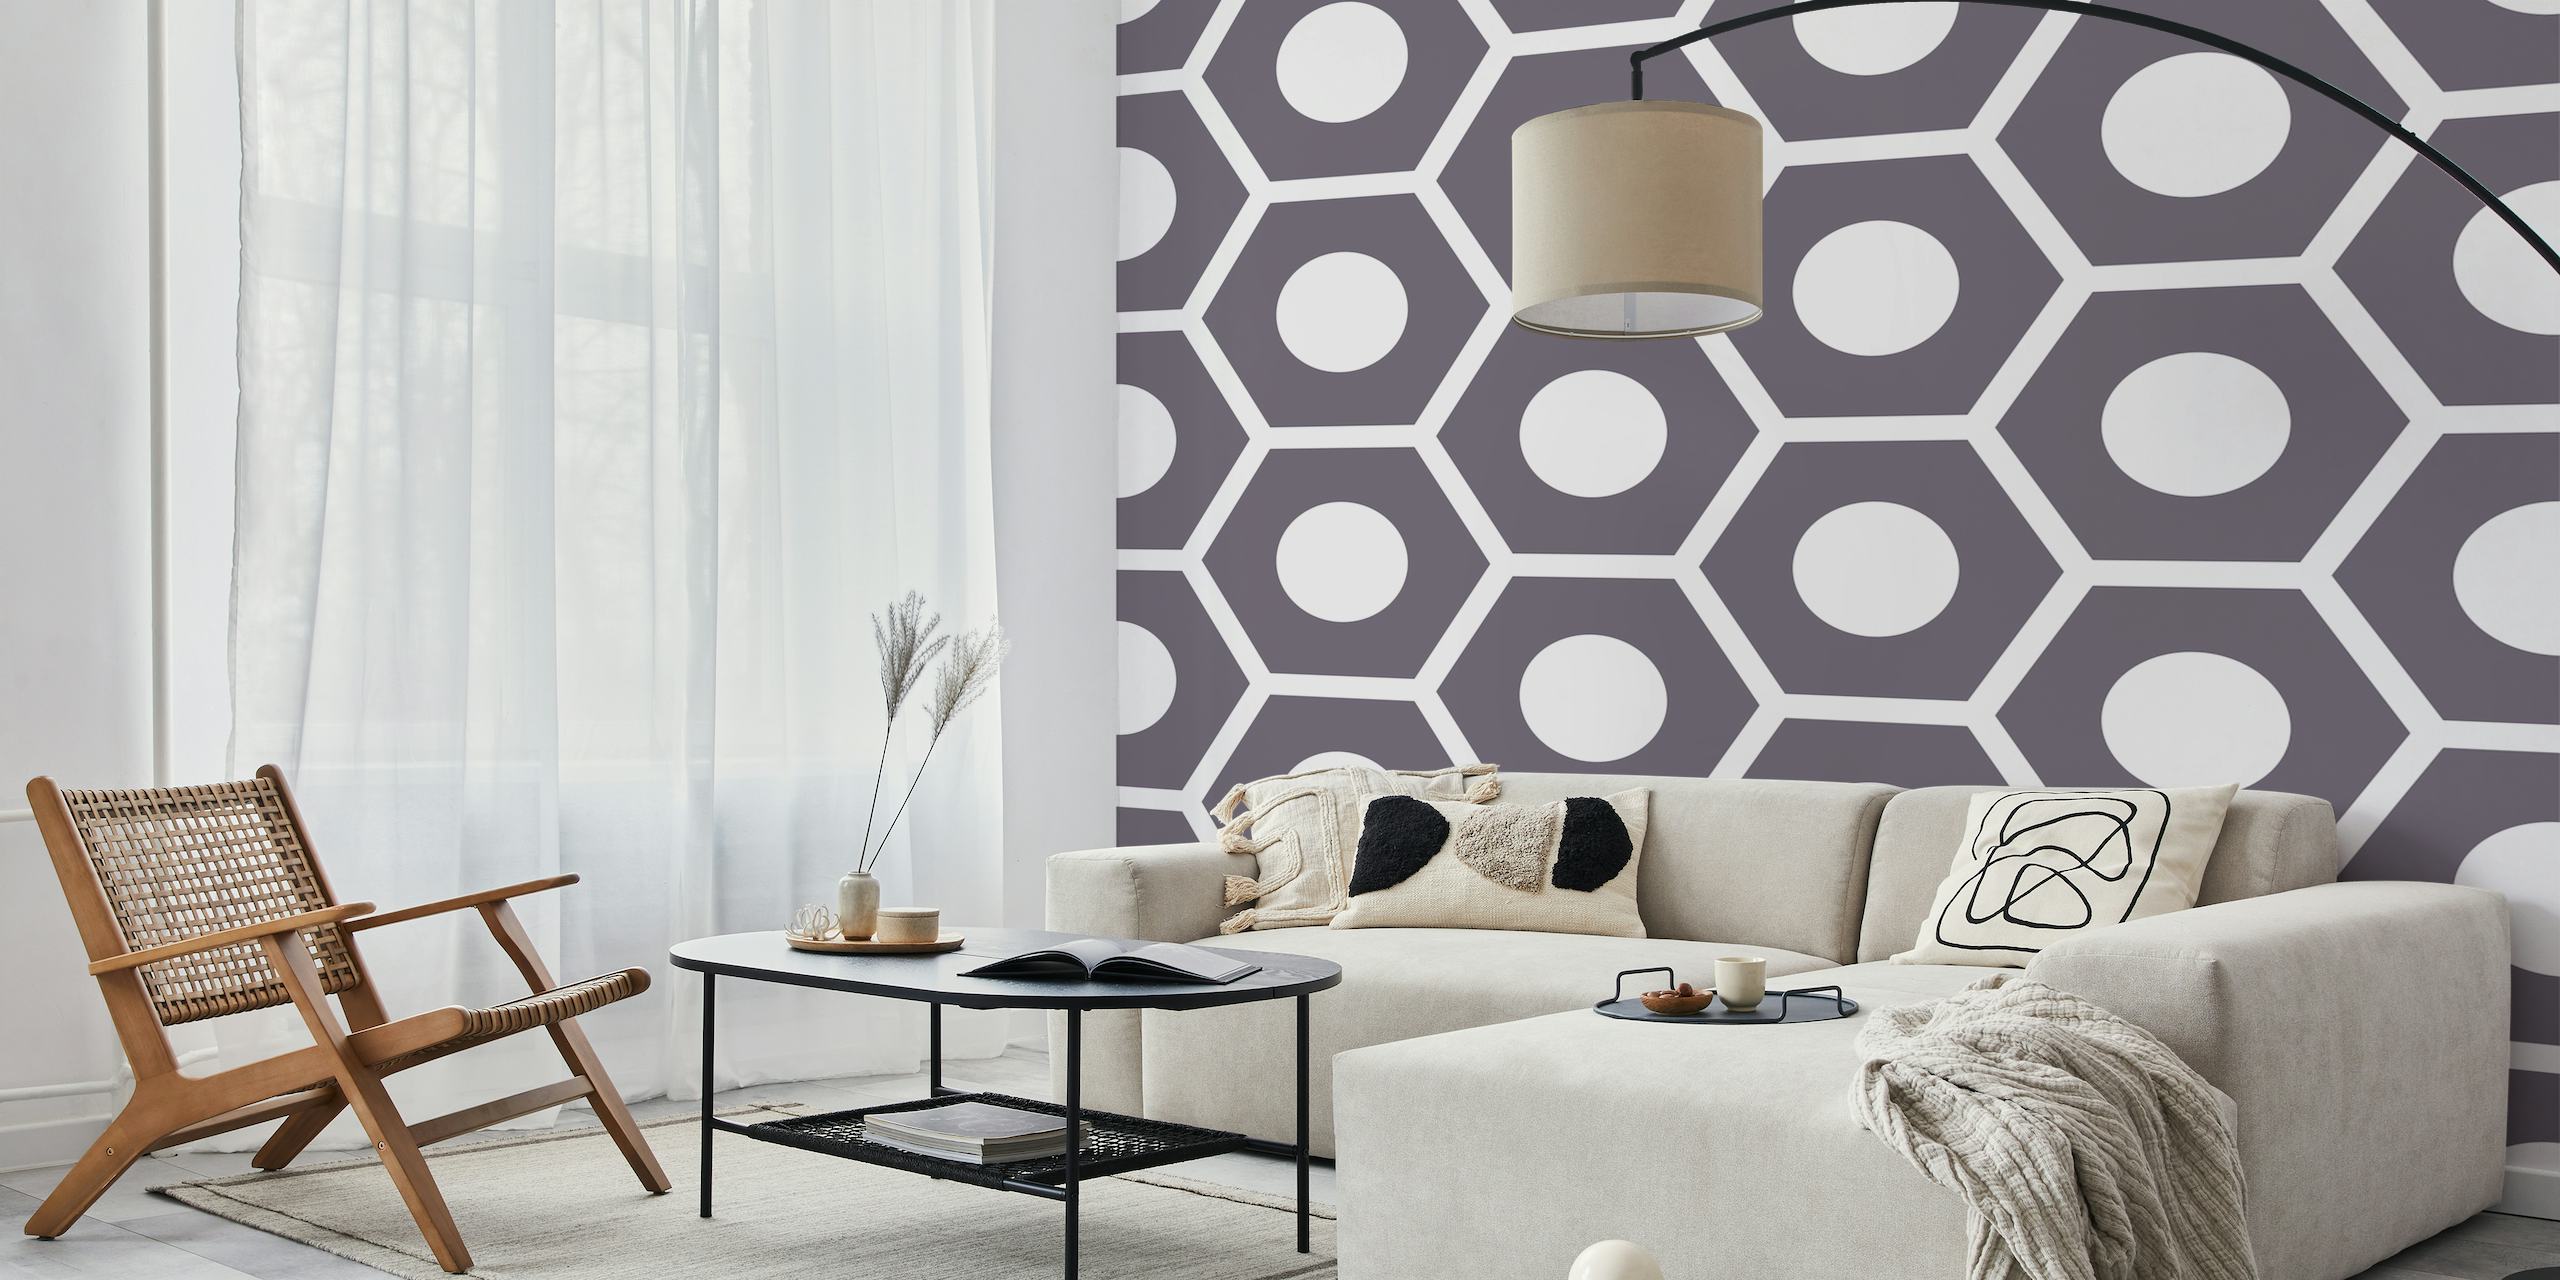 Zweifarbiges Wandbild mit Sechseckmuster und geometrischem Design in Grau und Weiß.